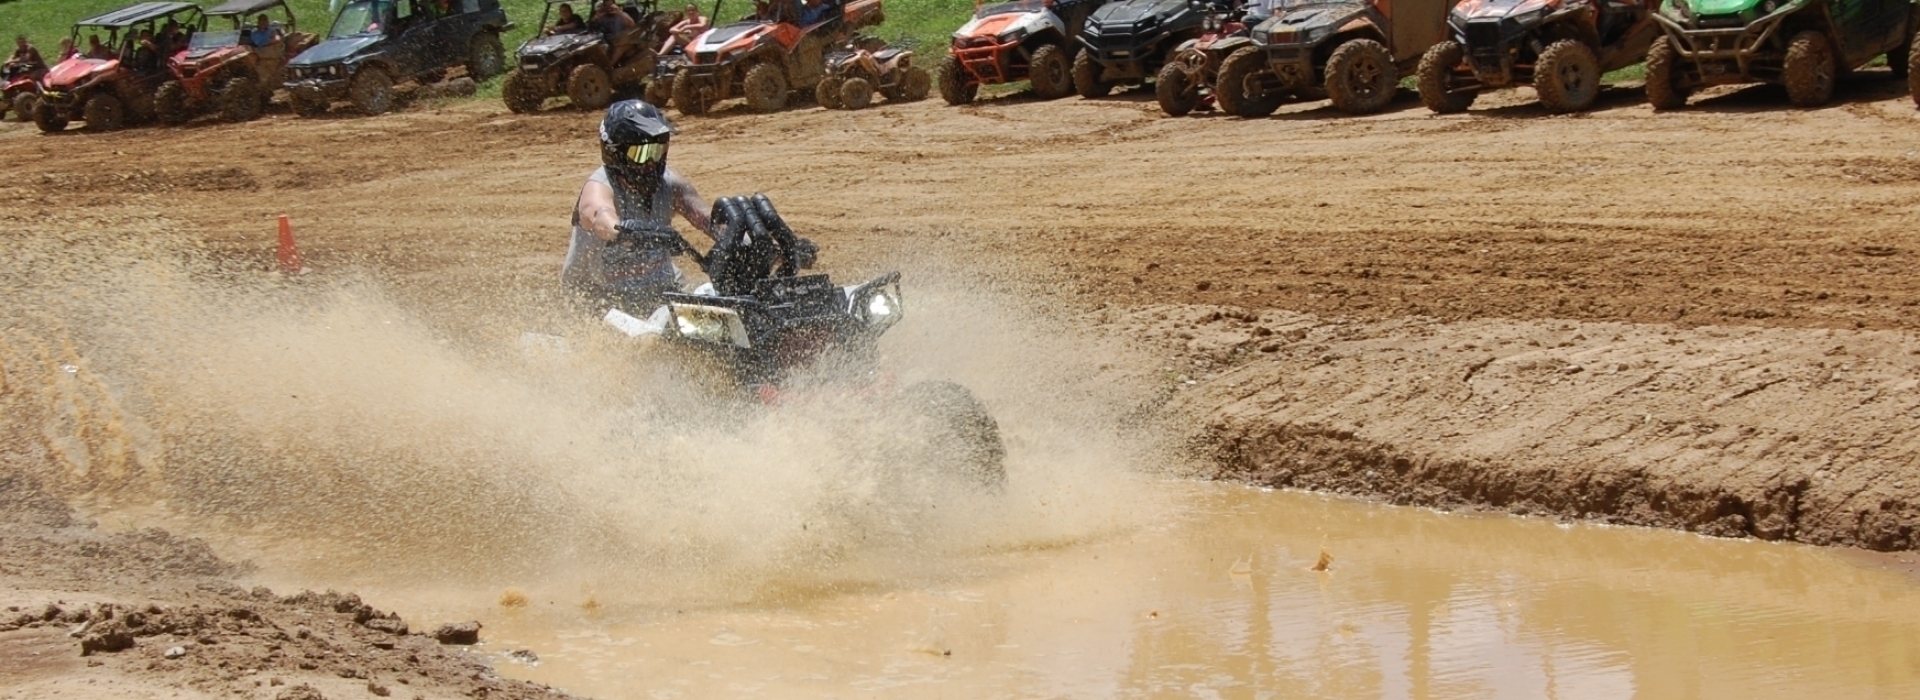 man riding four wheeler through mud puddle